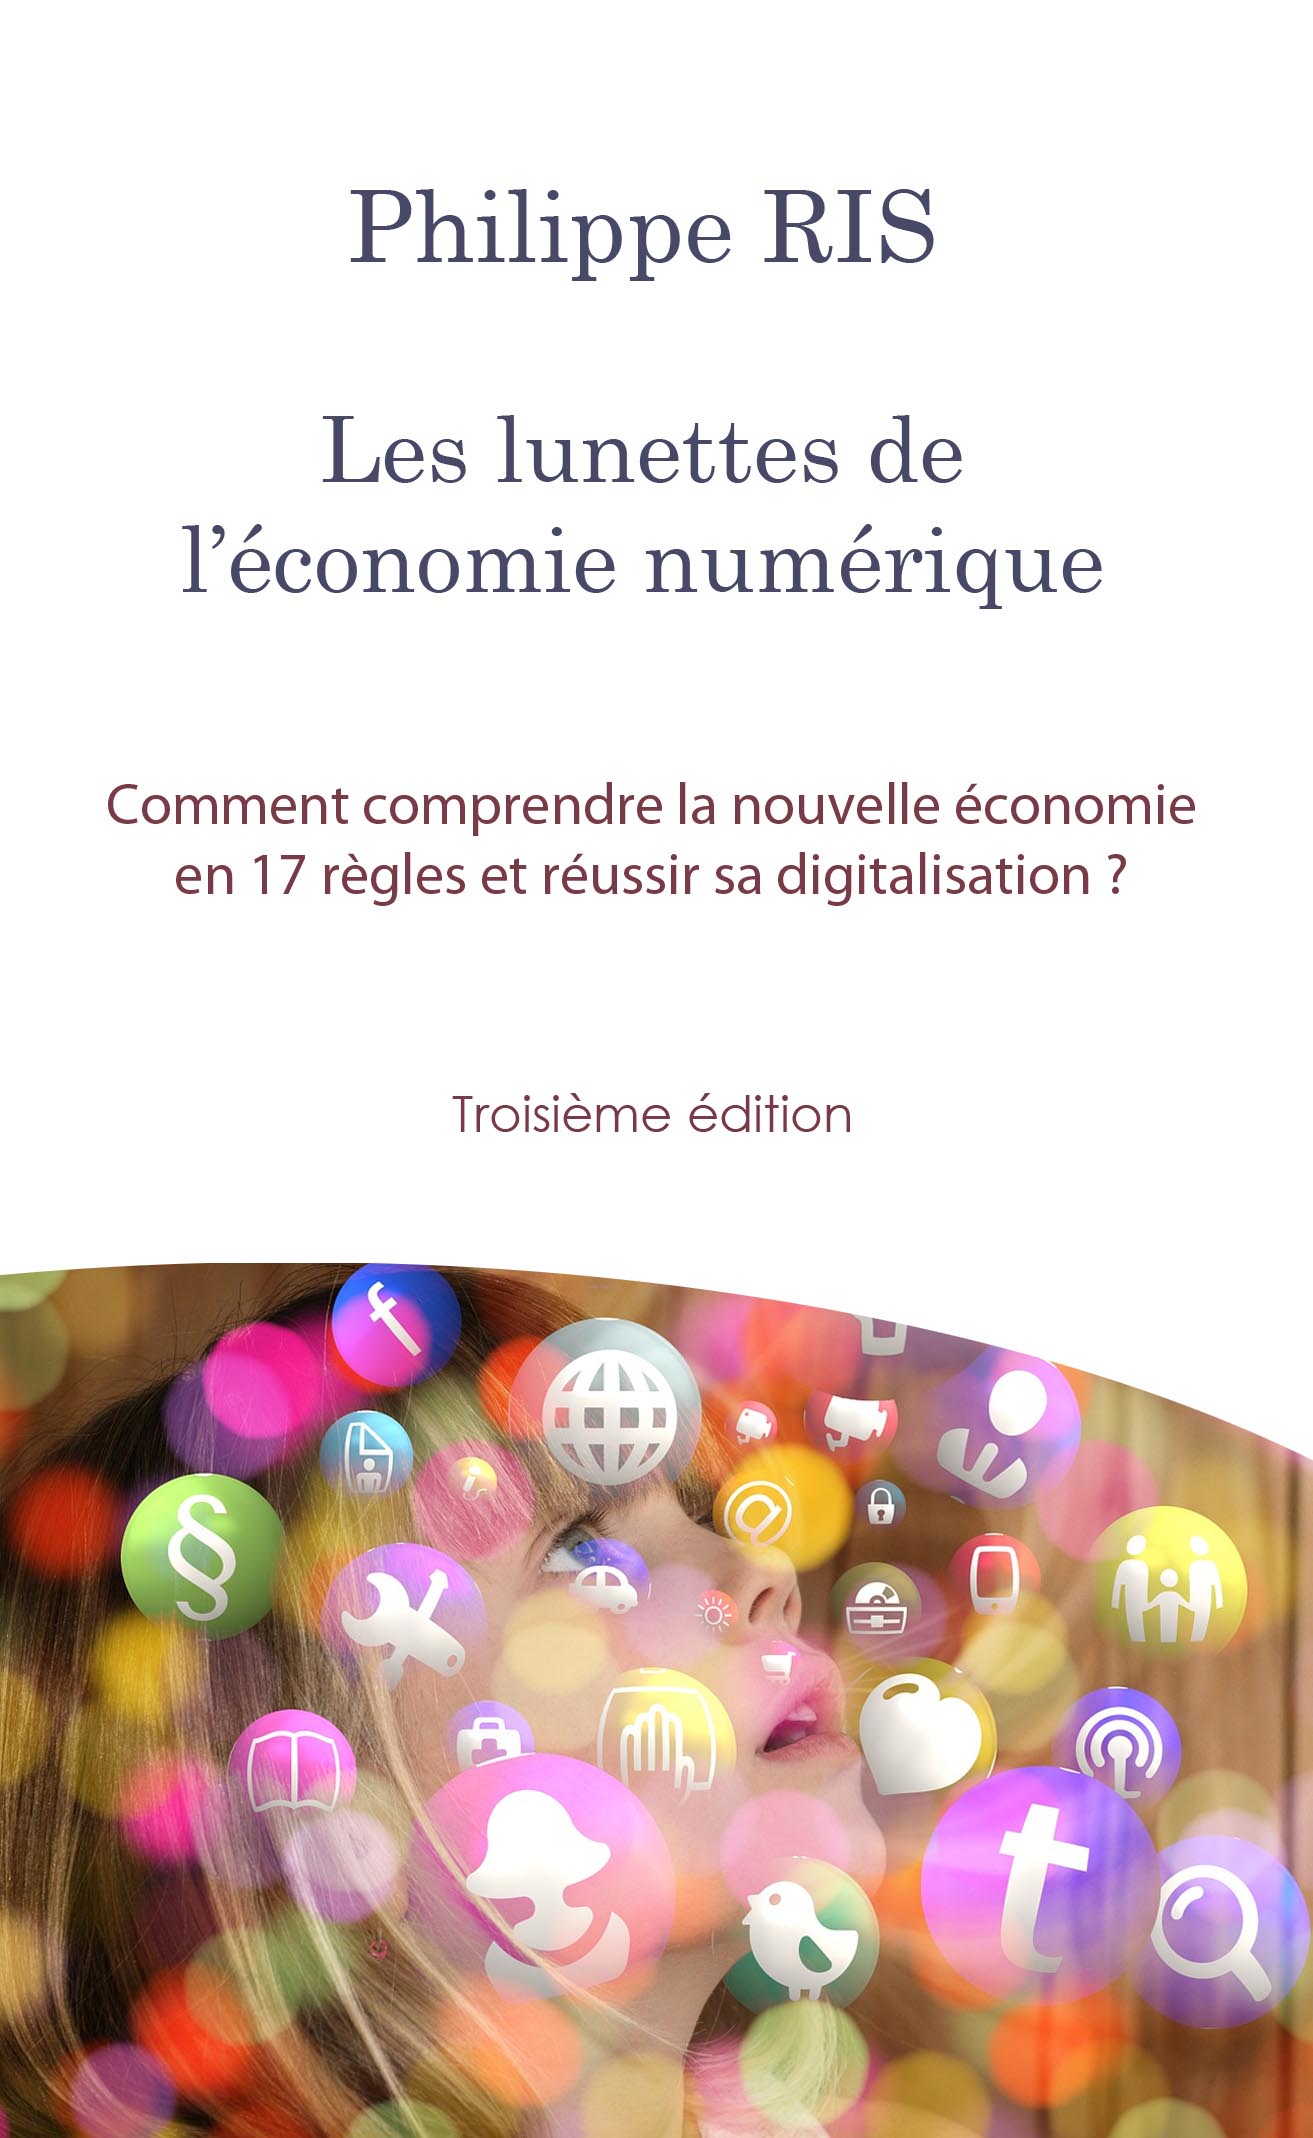 Le livre « Les lunettes de l’économie numérique »